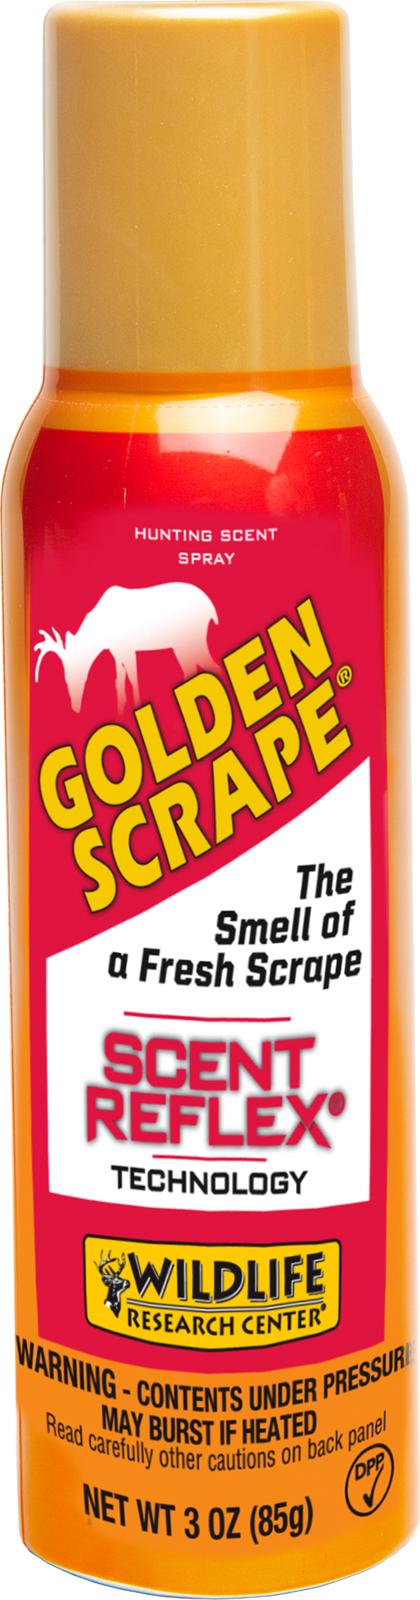 Wildlife Research 242-3 Golden Scrape (w/Scent Reflex Technology)